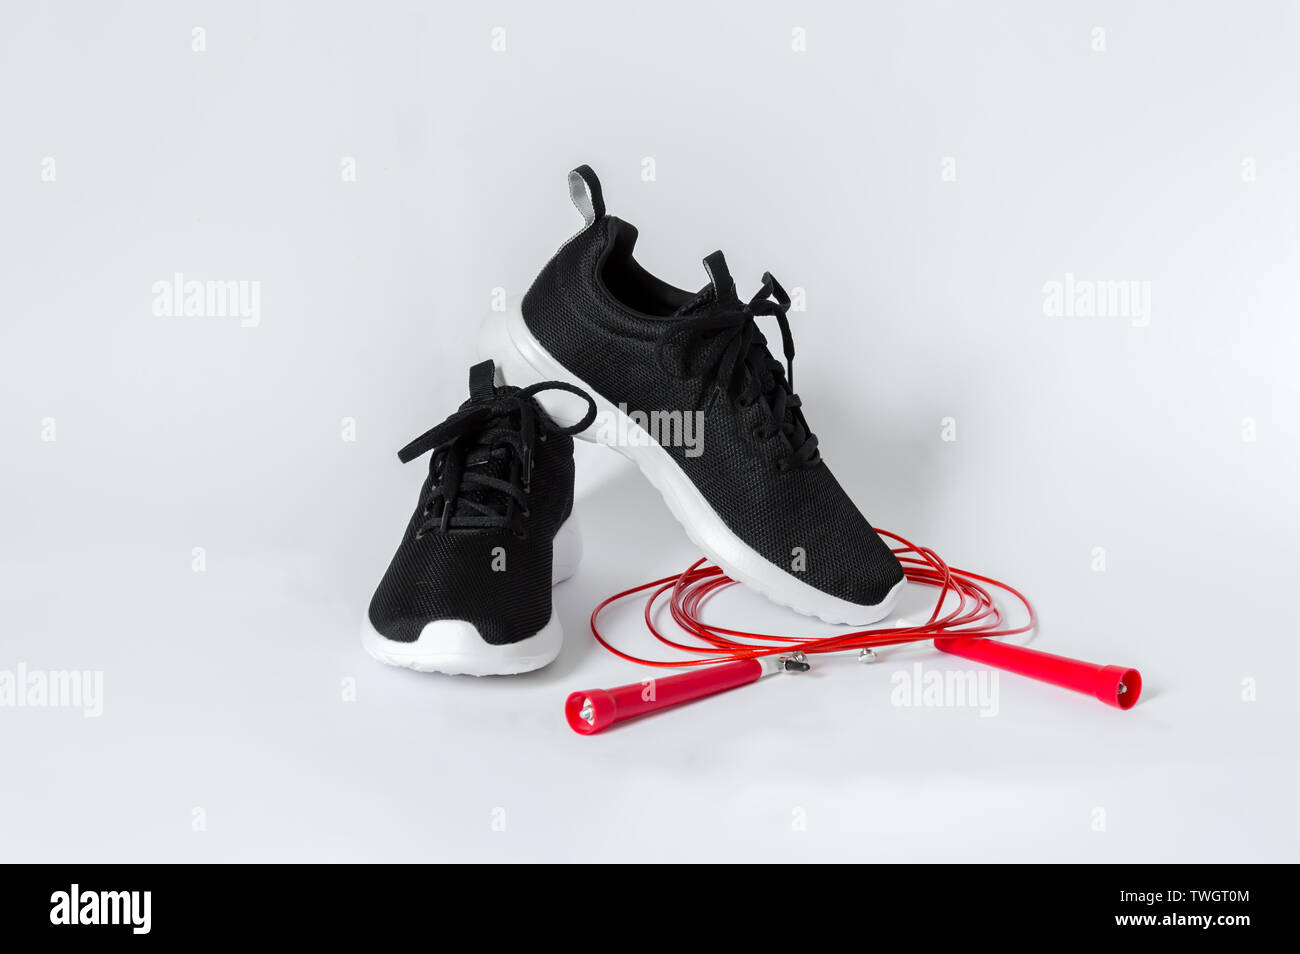 Schwarz sport Turnschuhe mit weißer Sohle und roten Seilspringen auf weißem  Hintergrund. Konzept der Fitness und gesunde Lebensweise Stockfotografie -  Alamy